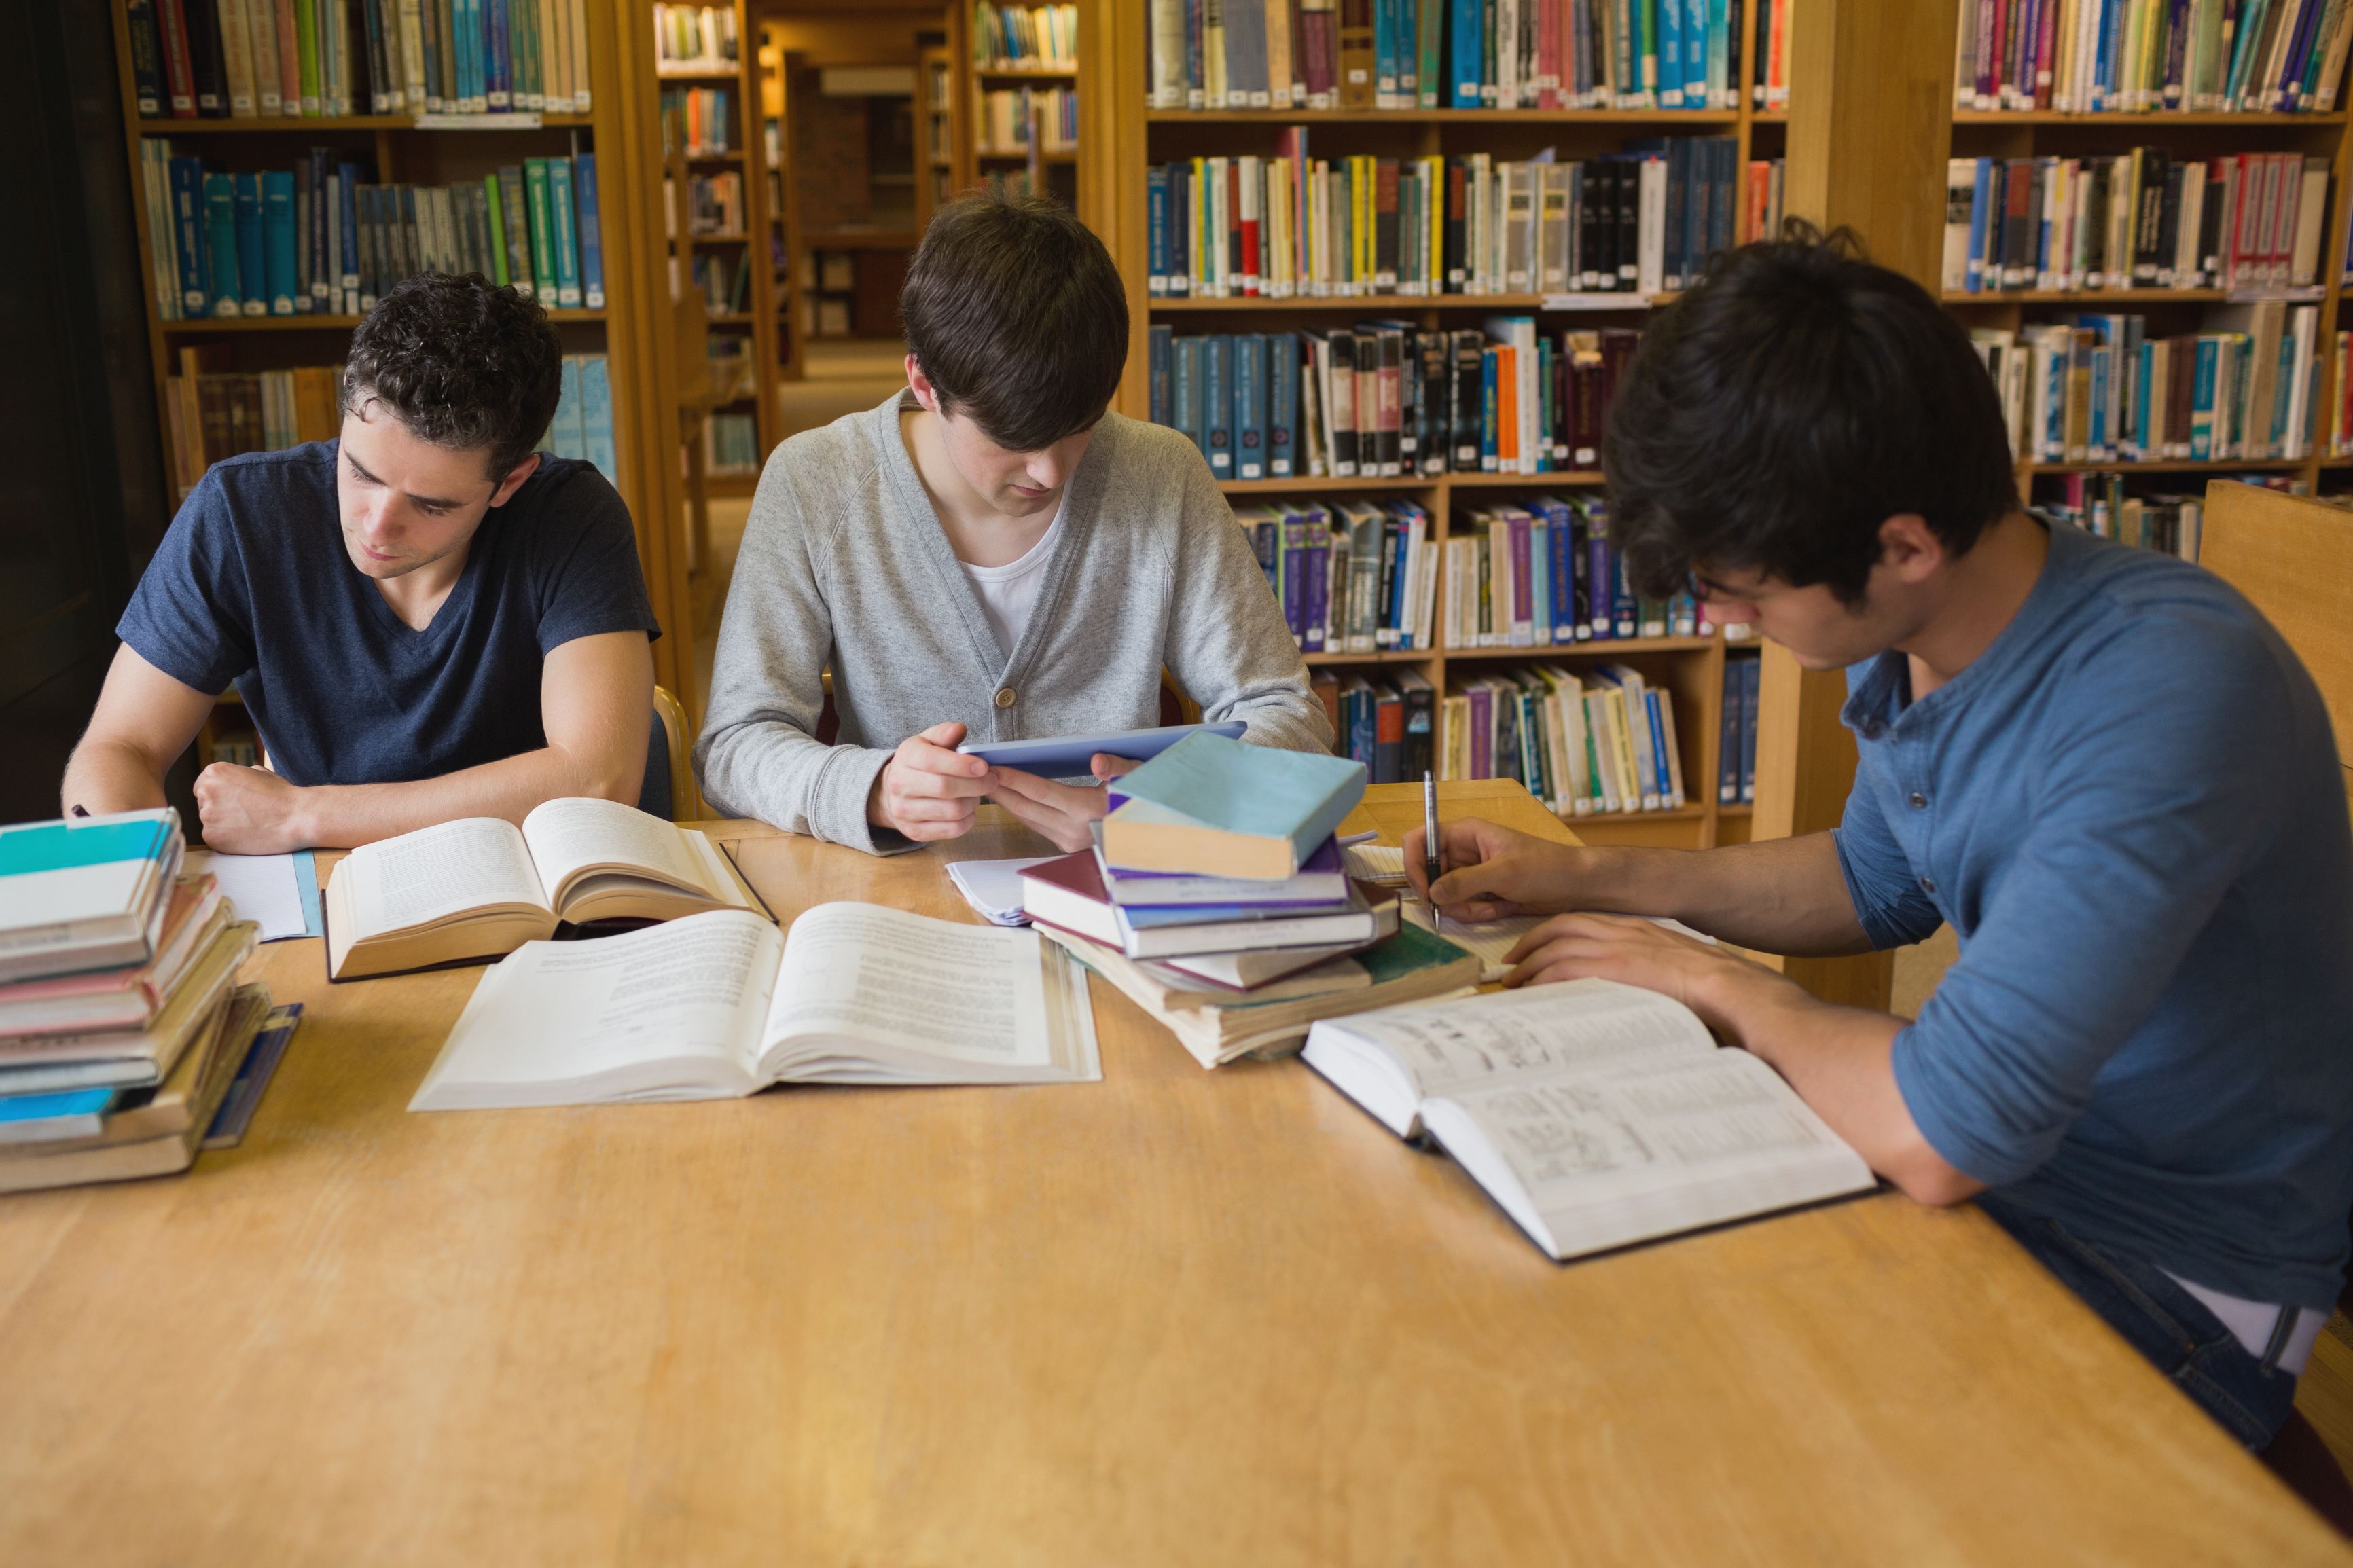 Также можно прочитать. Студенты в библиотеке. Учеба в библиотеке. Читатели в библиотеке. Люди в библиотеке.